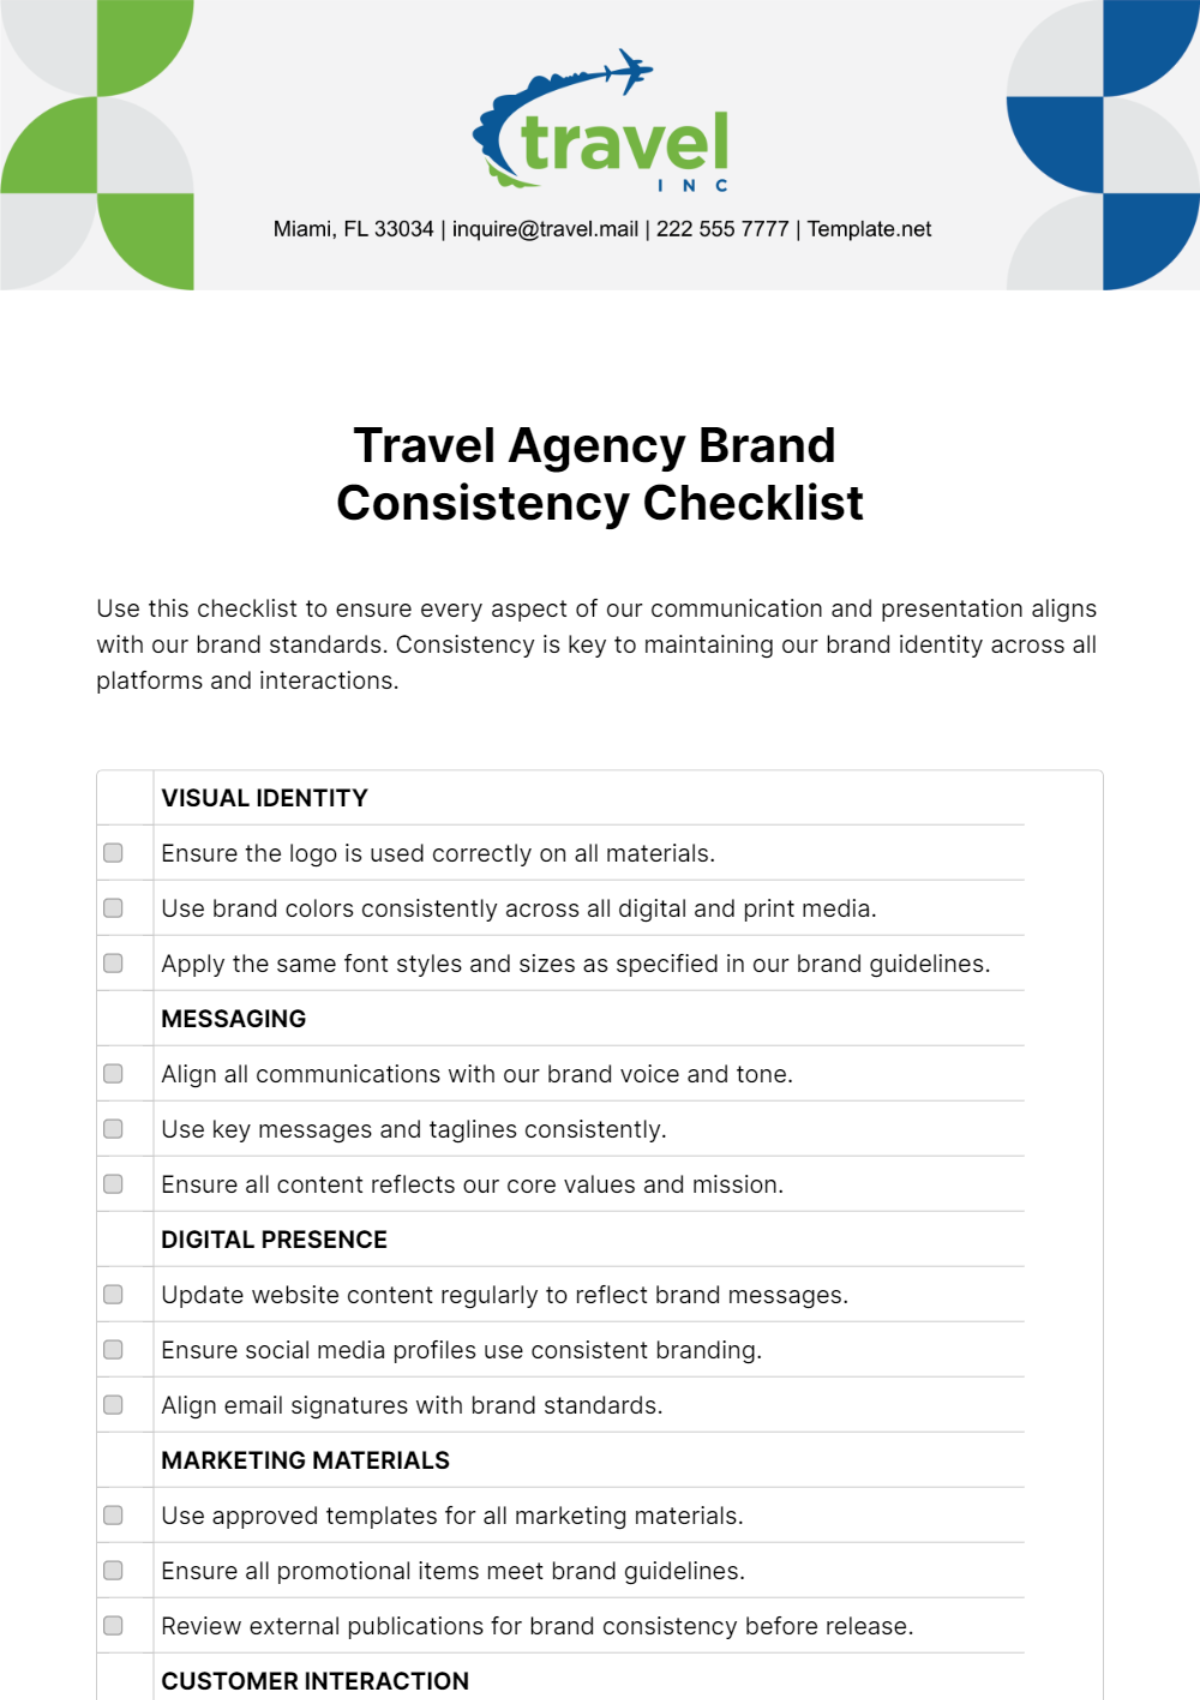 Free Travel Agency Brand Consistency Checklist Template